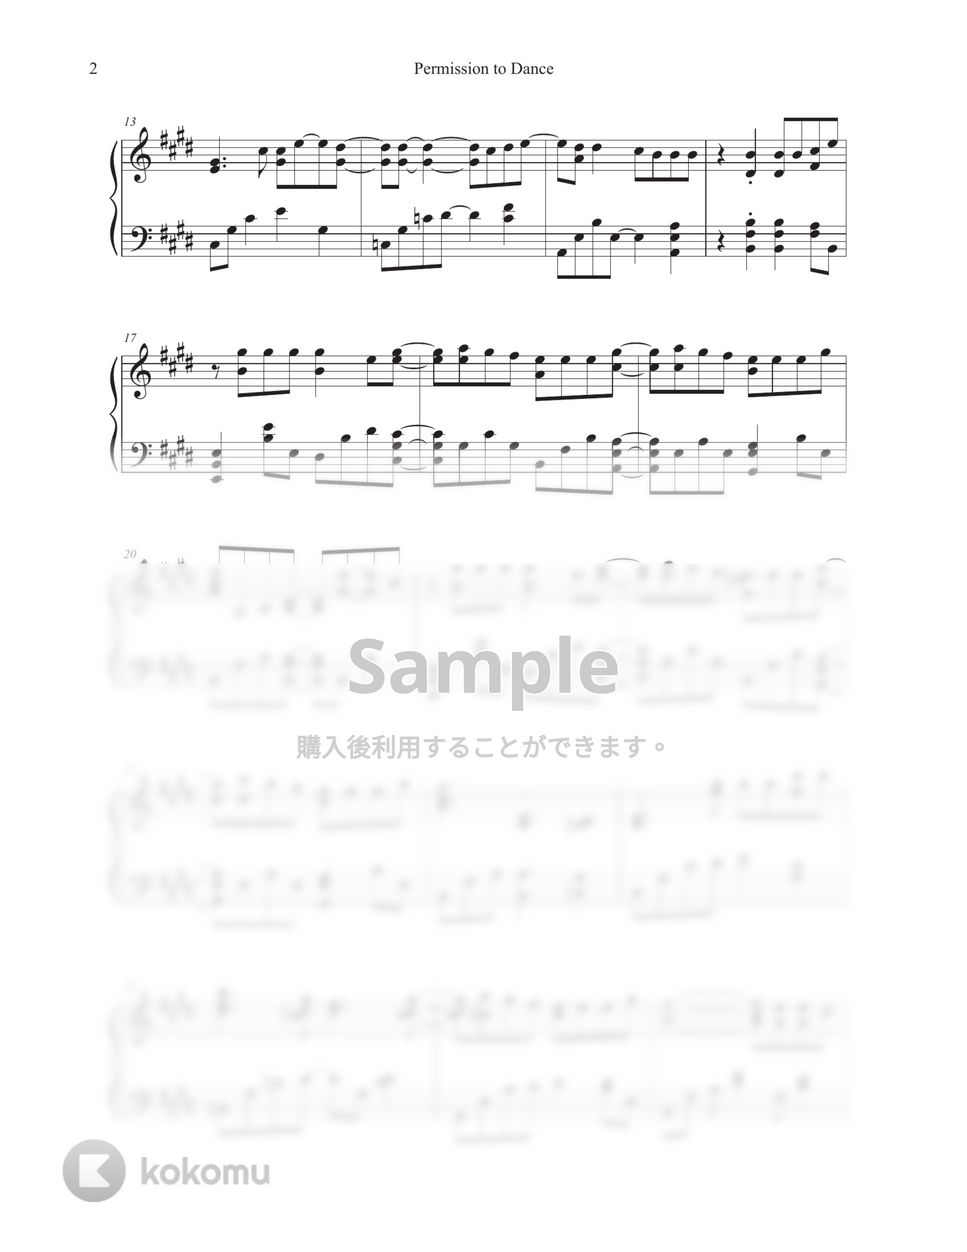 防弾少年団(BTS) - Permission to Dance (Original Key) by Tully Piano